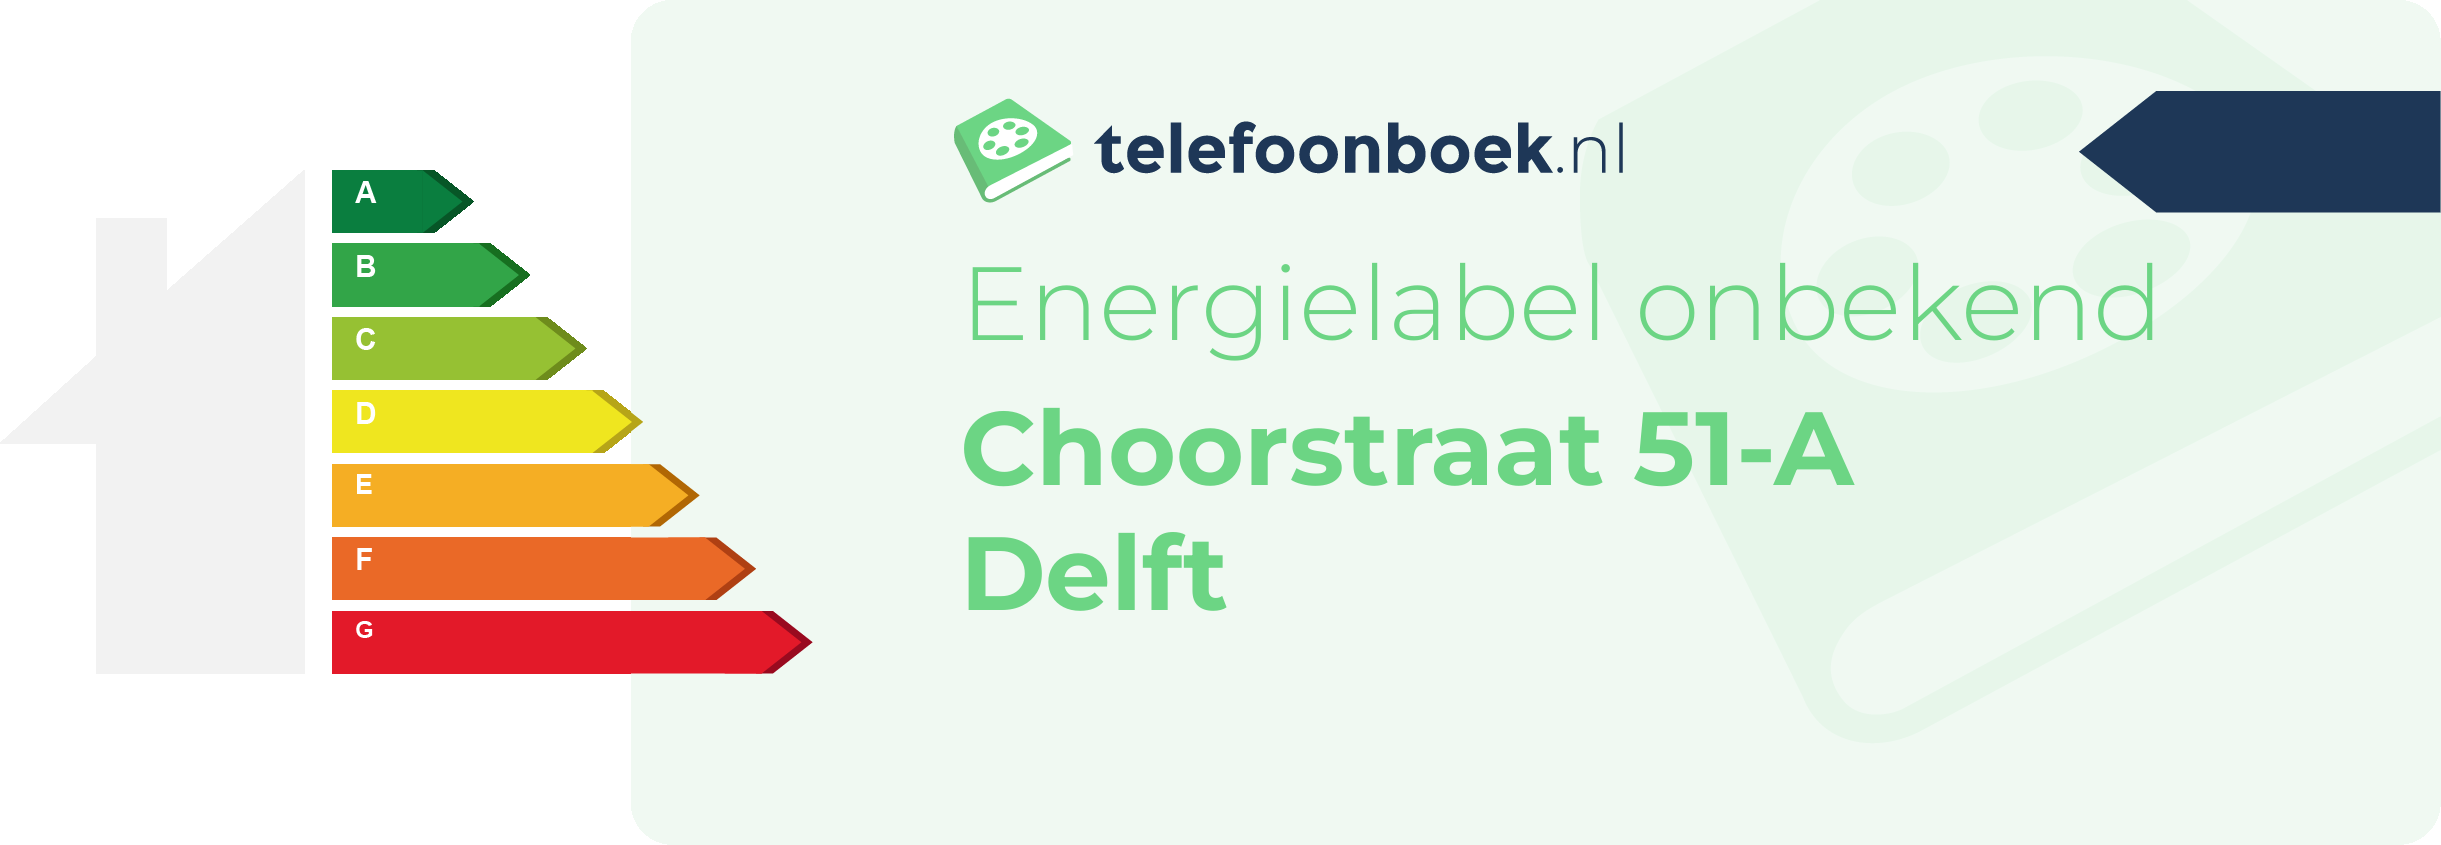 Energielabel Choorstraat 51-A Delft